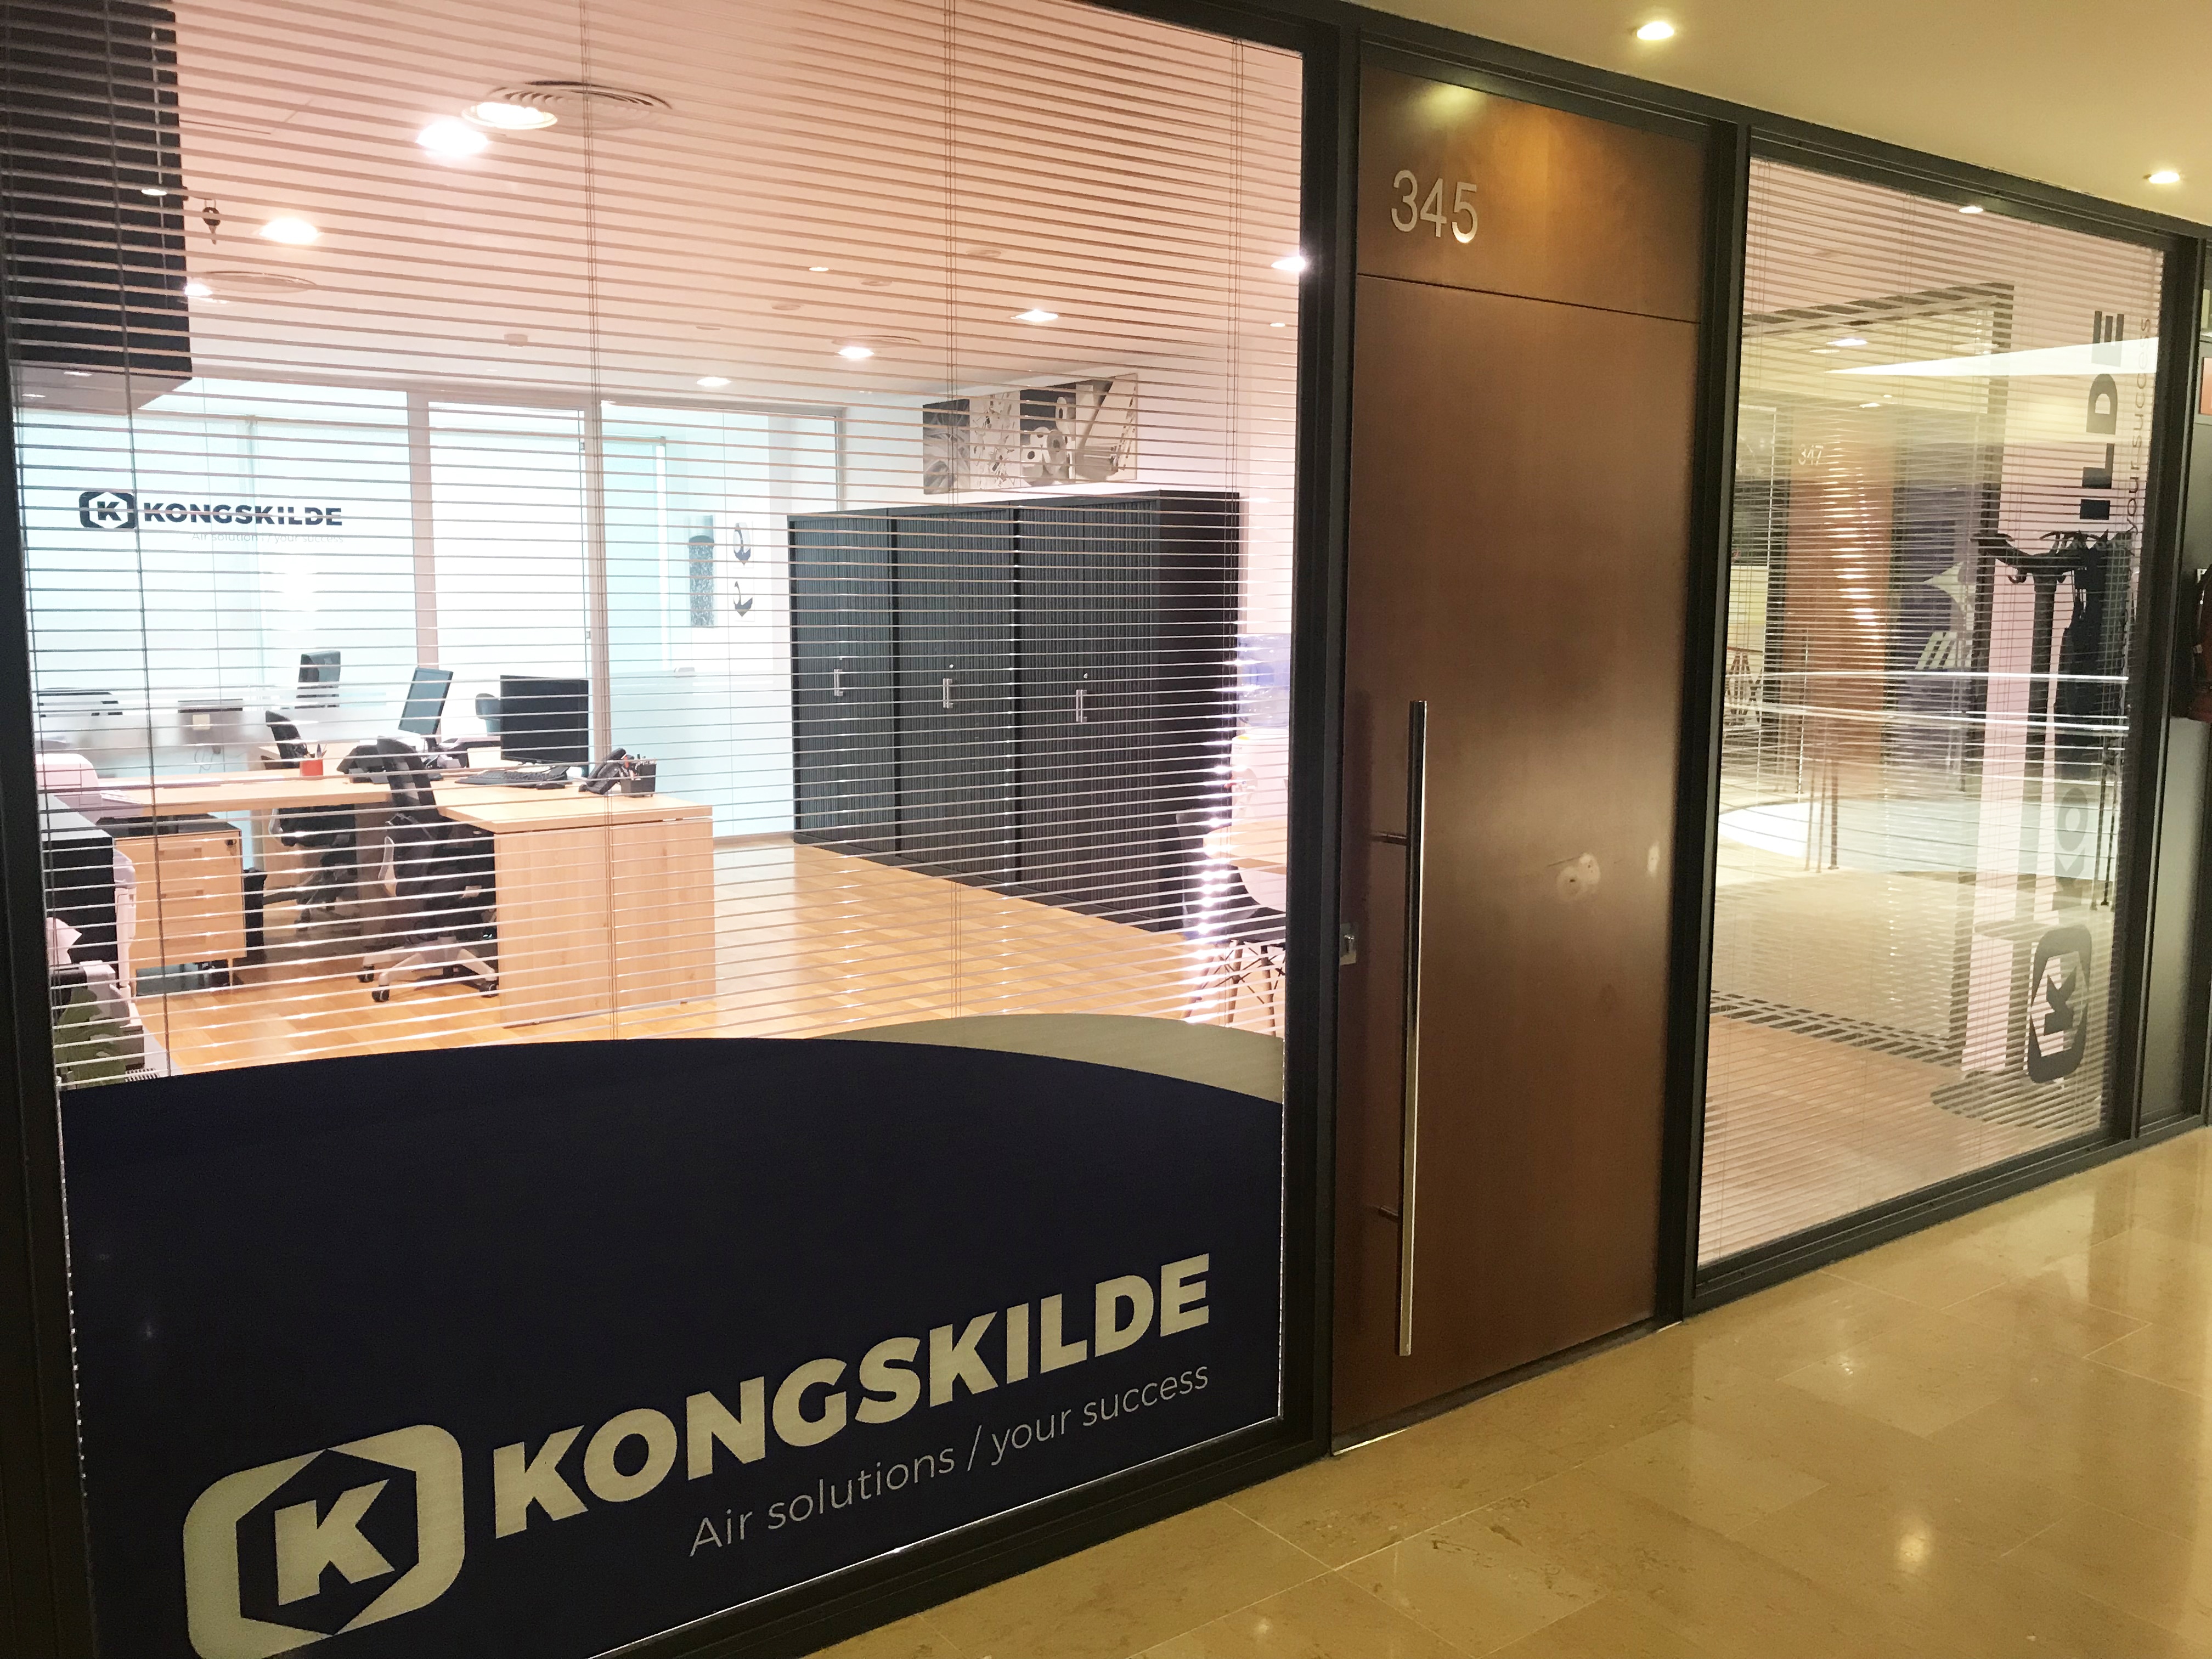 Kongskilde Industries' sales office in Spain